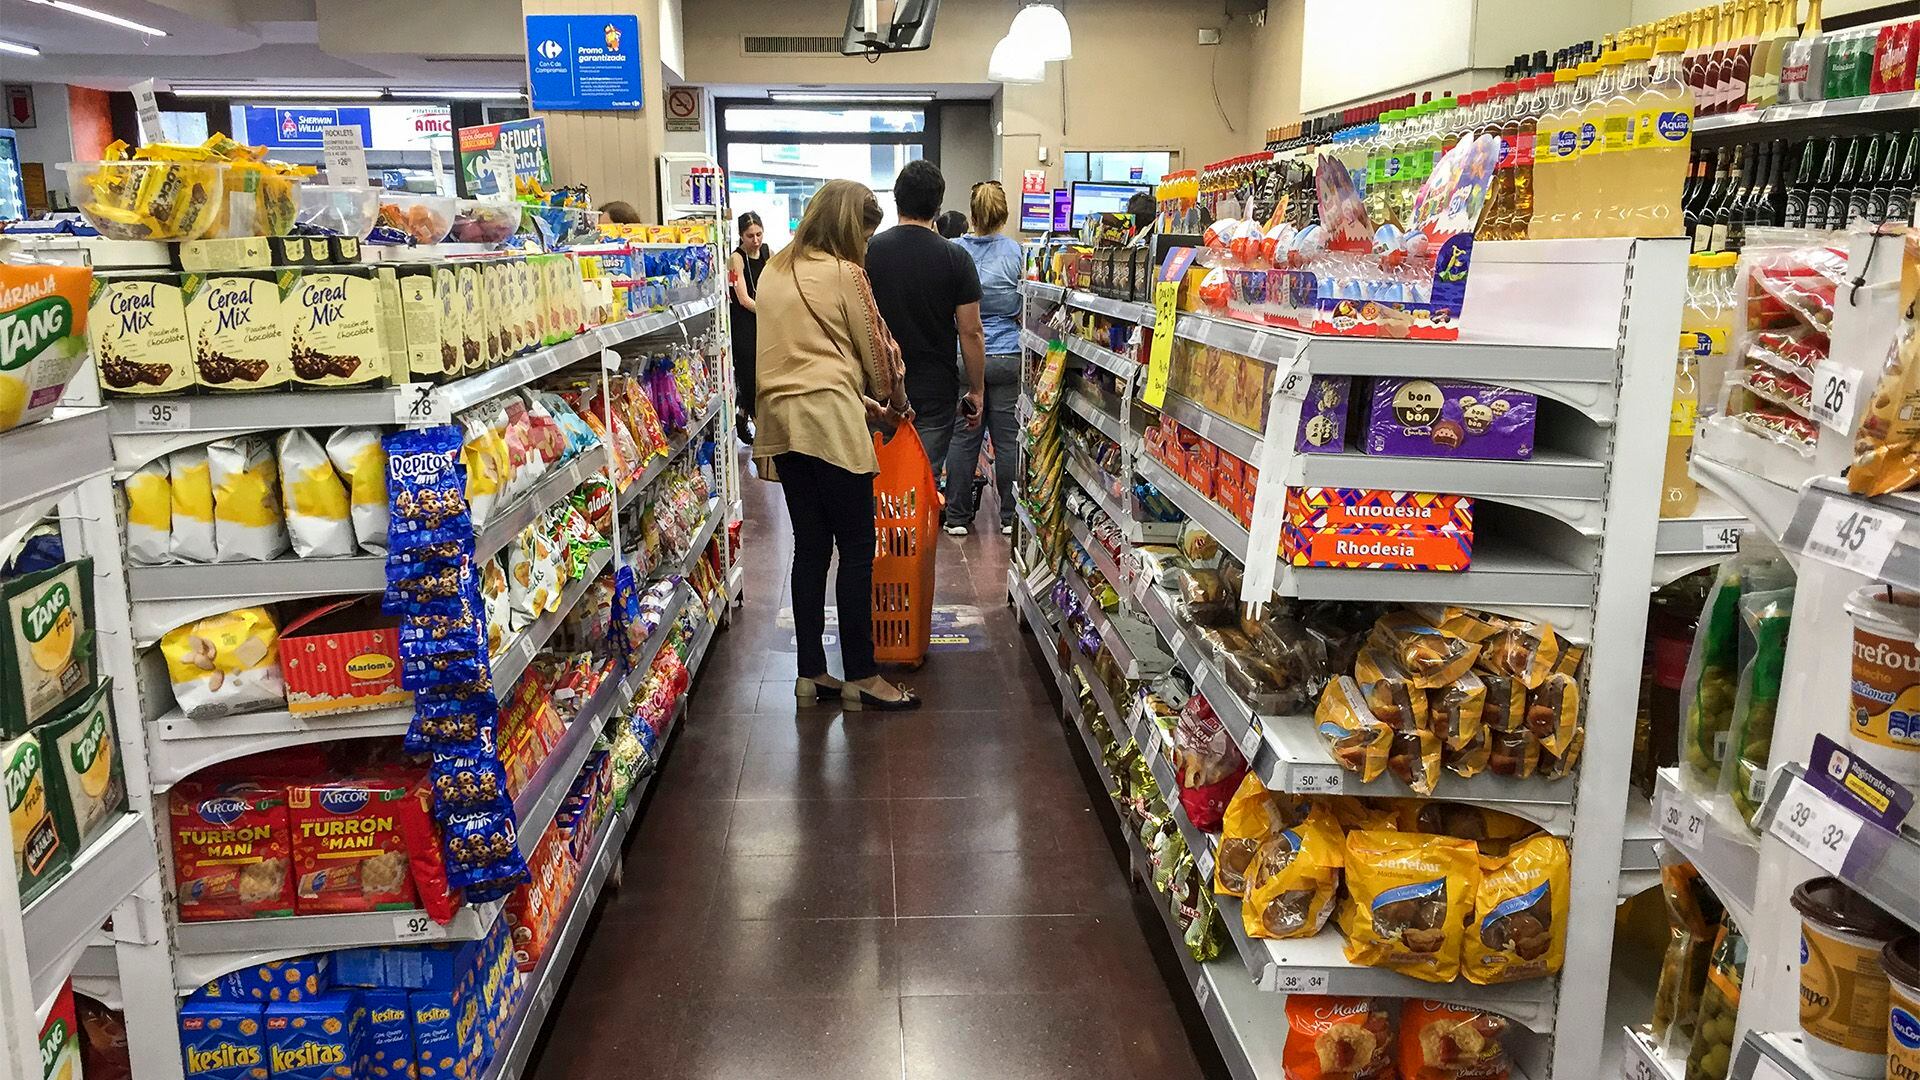 Los supermercados publicitan sus promos, aunque no siempre le resultan convenientes al consumidor  (NA)